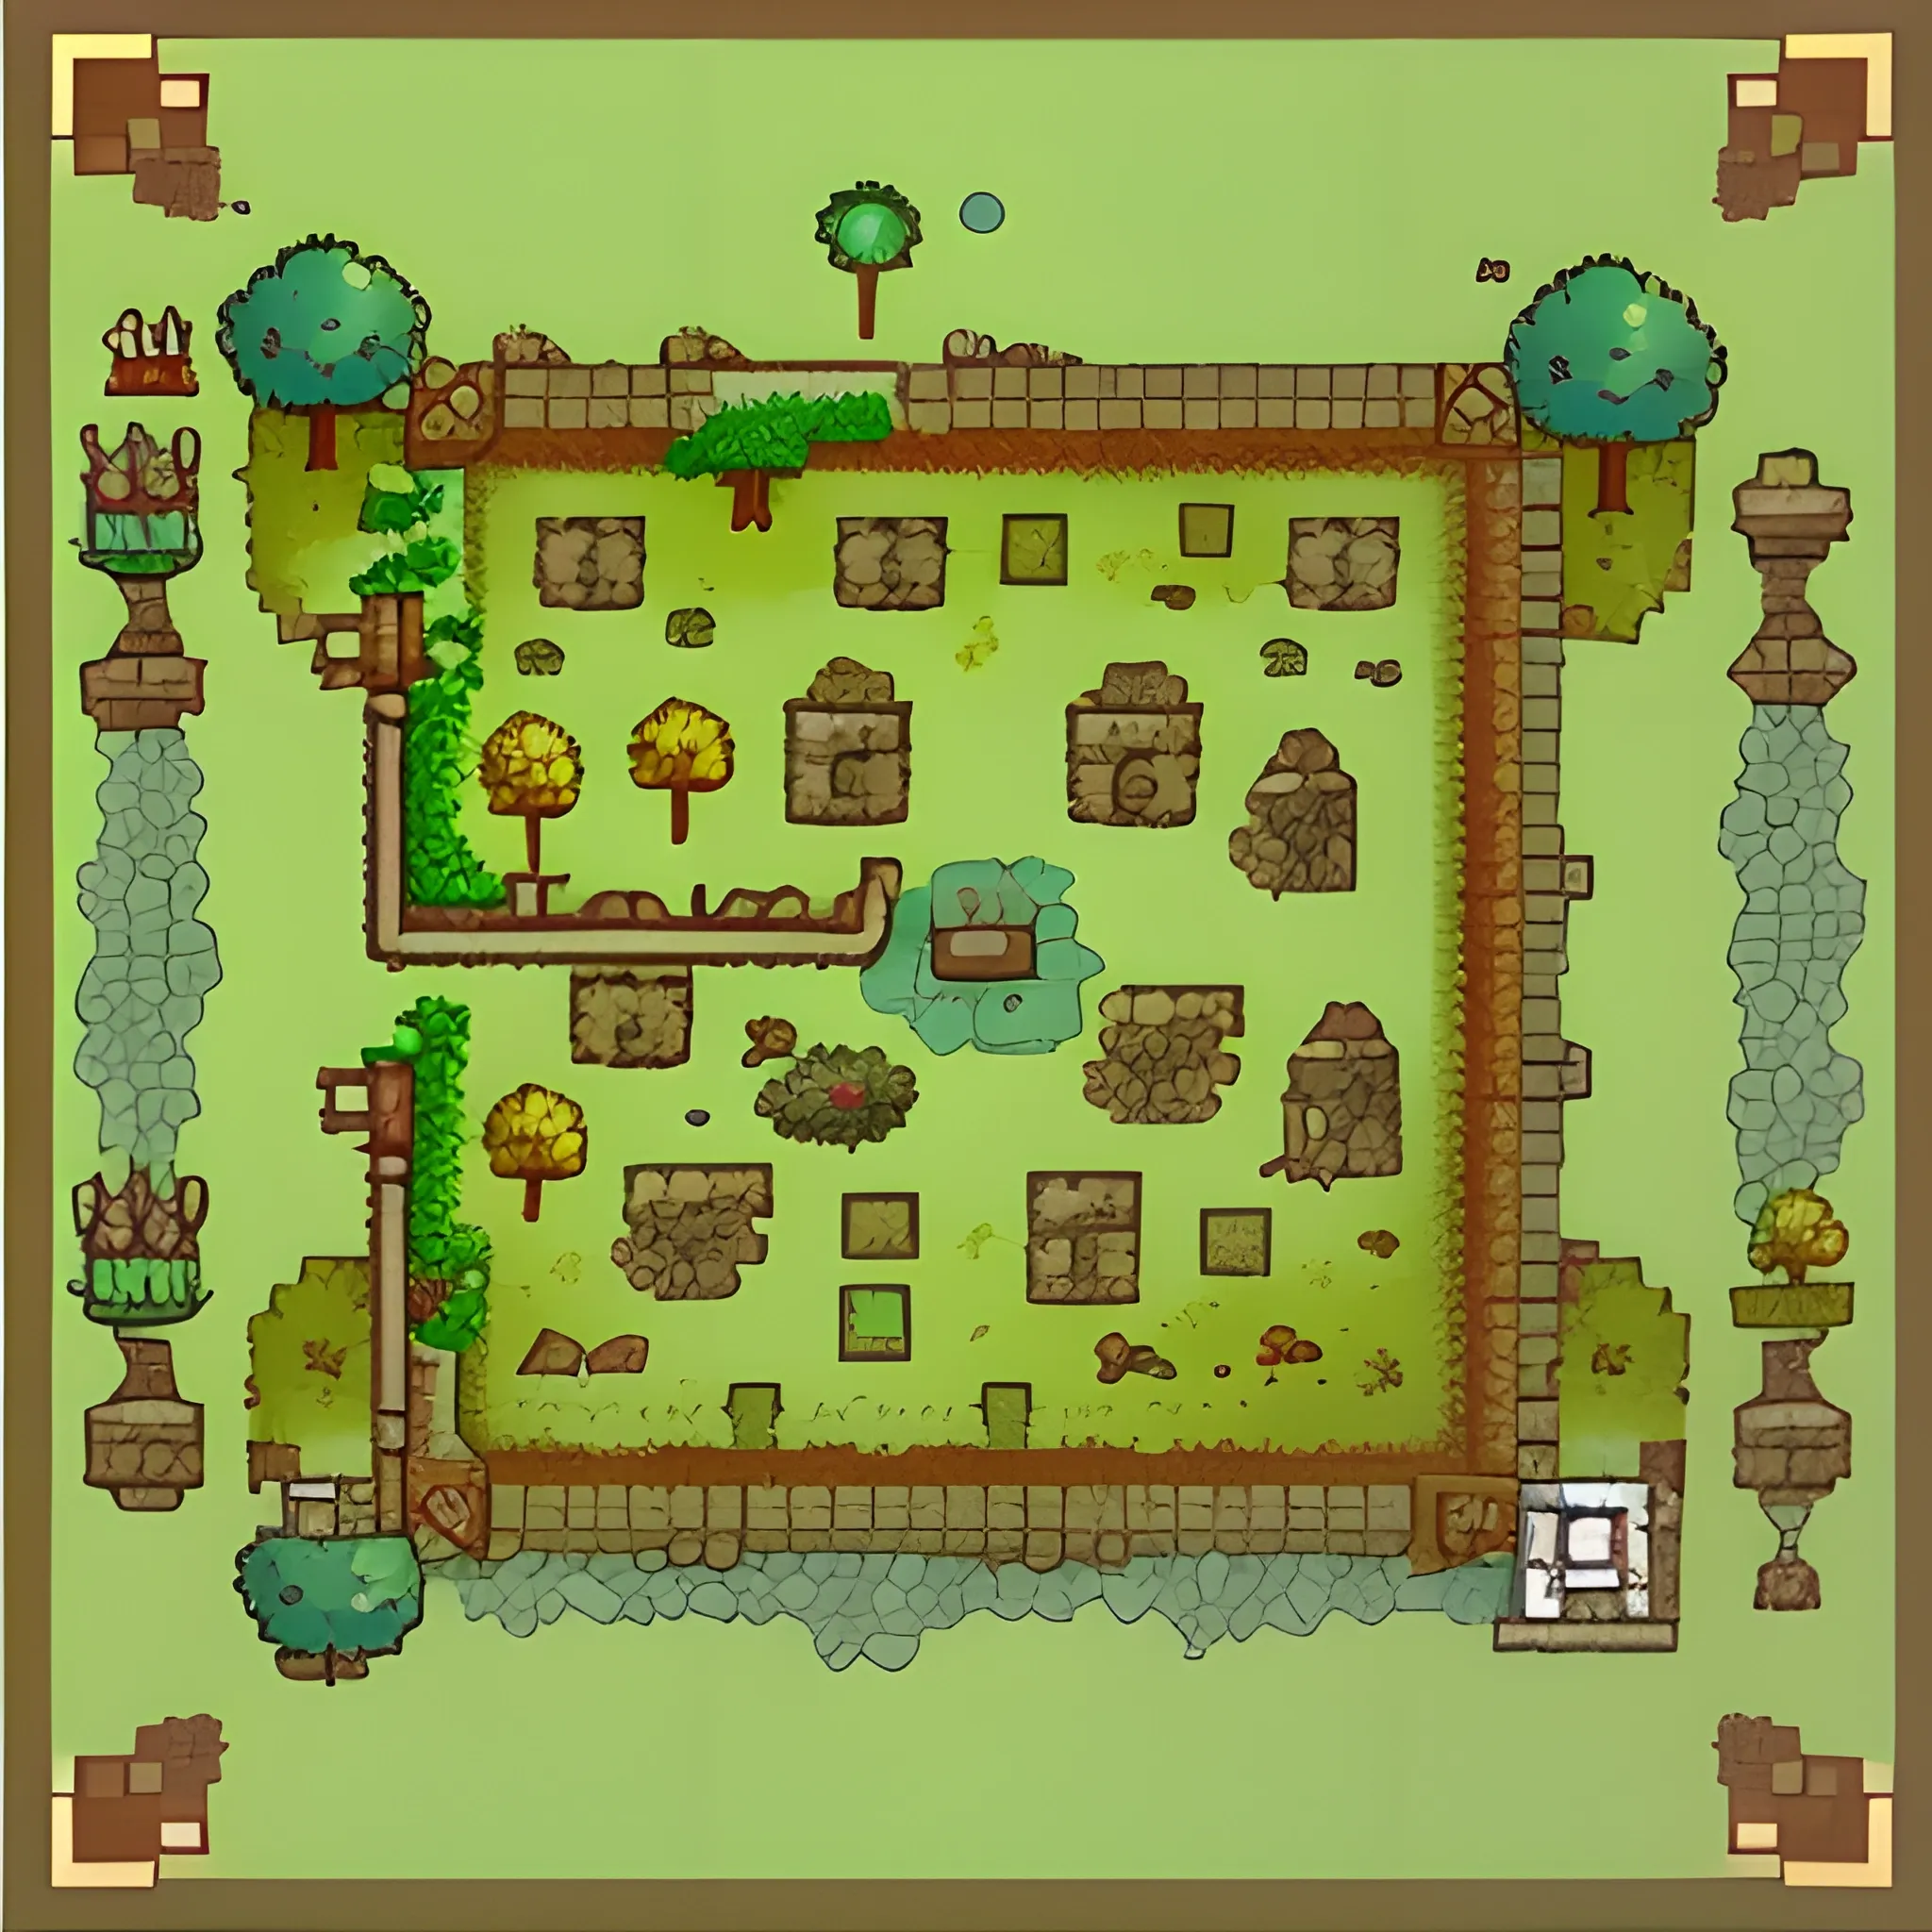 tile map , forest , fantasy , platformer game genre , flat 2D